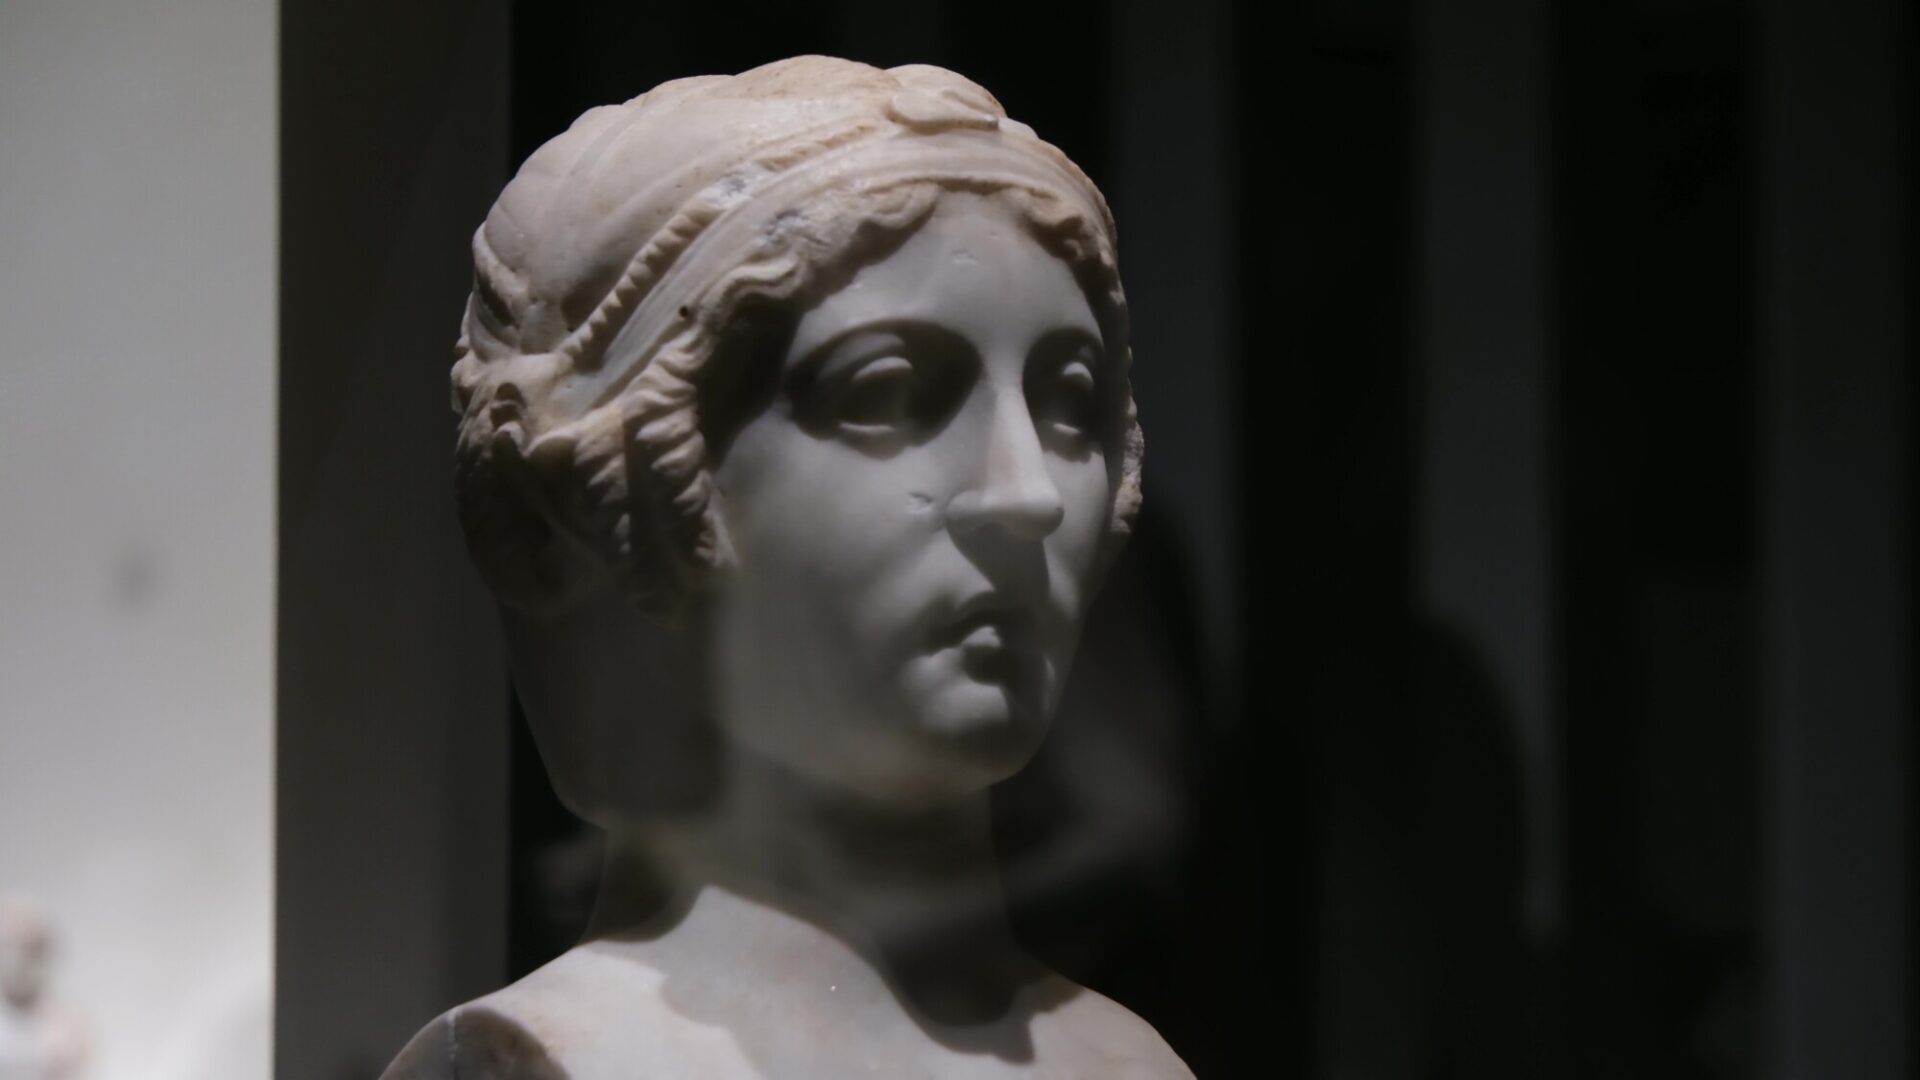 이 작품 속 두 여성은 그리스 시인 사포(Sappho)와 에린나(Erinna)로 추정된다. 로마 시대에는 상류층 시민의 교외 저택을 사각 기둥 위에 두상 조각을 결합한 조각인 헤르마로 장식하는 것이 유행이었다. | 박재현/에포크타임스